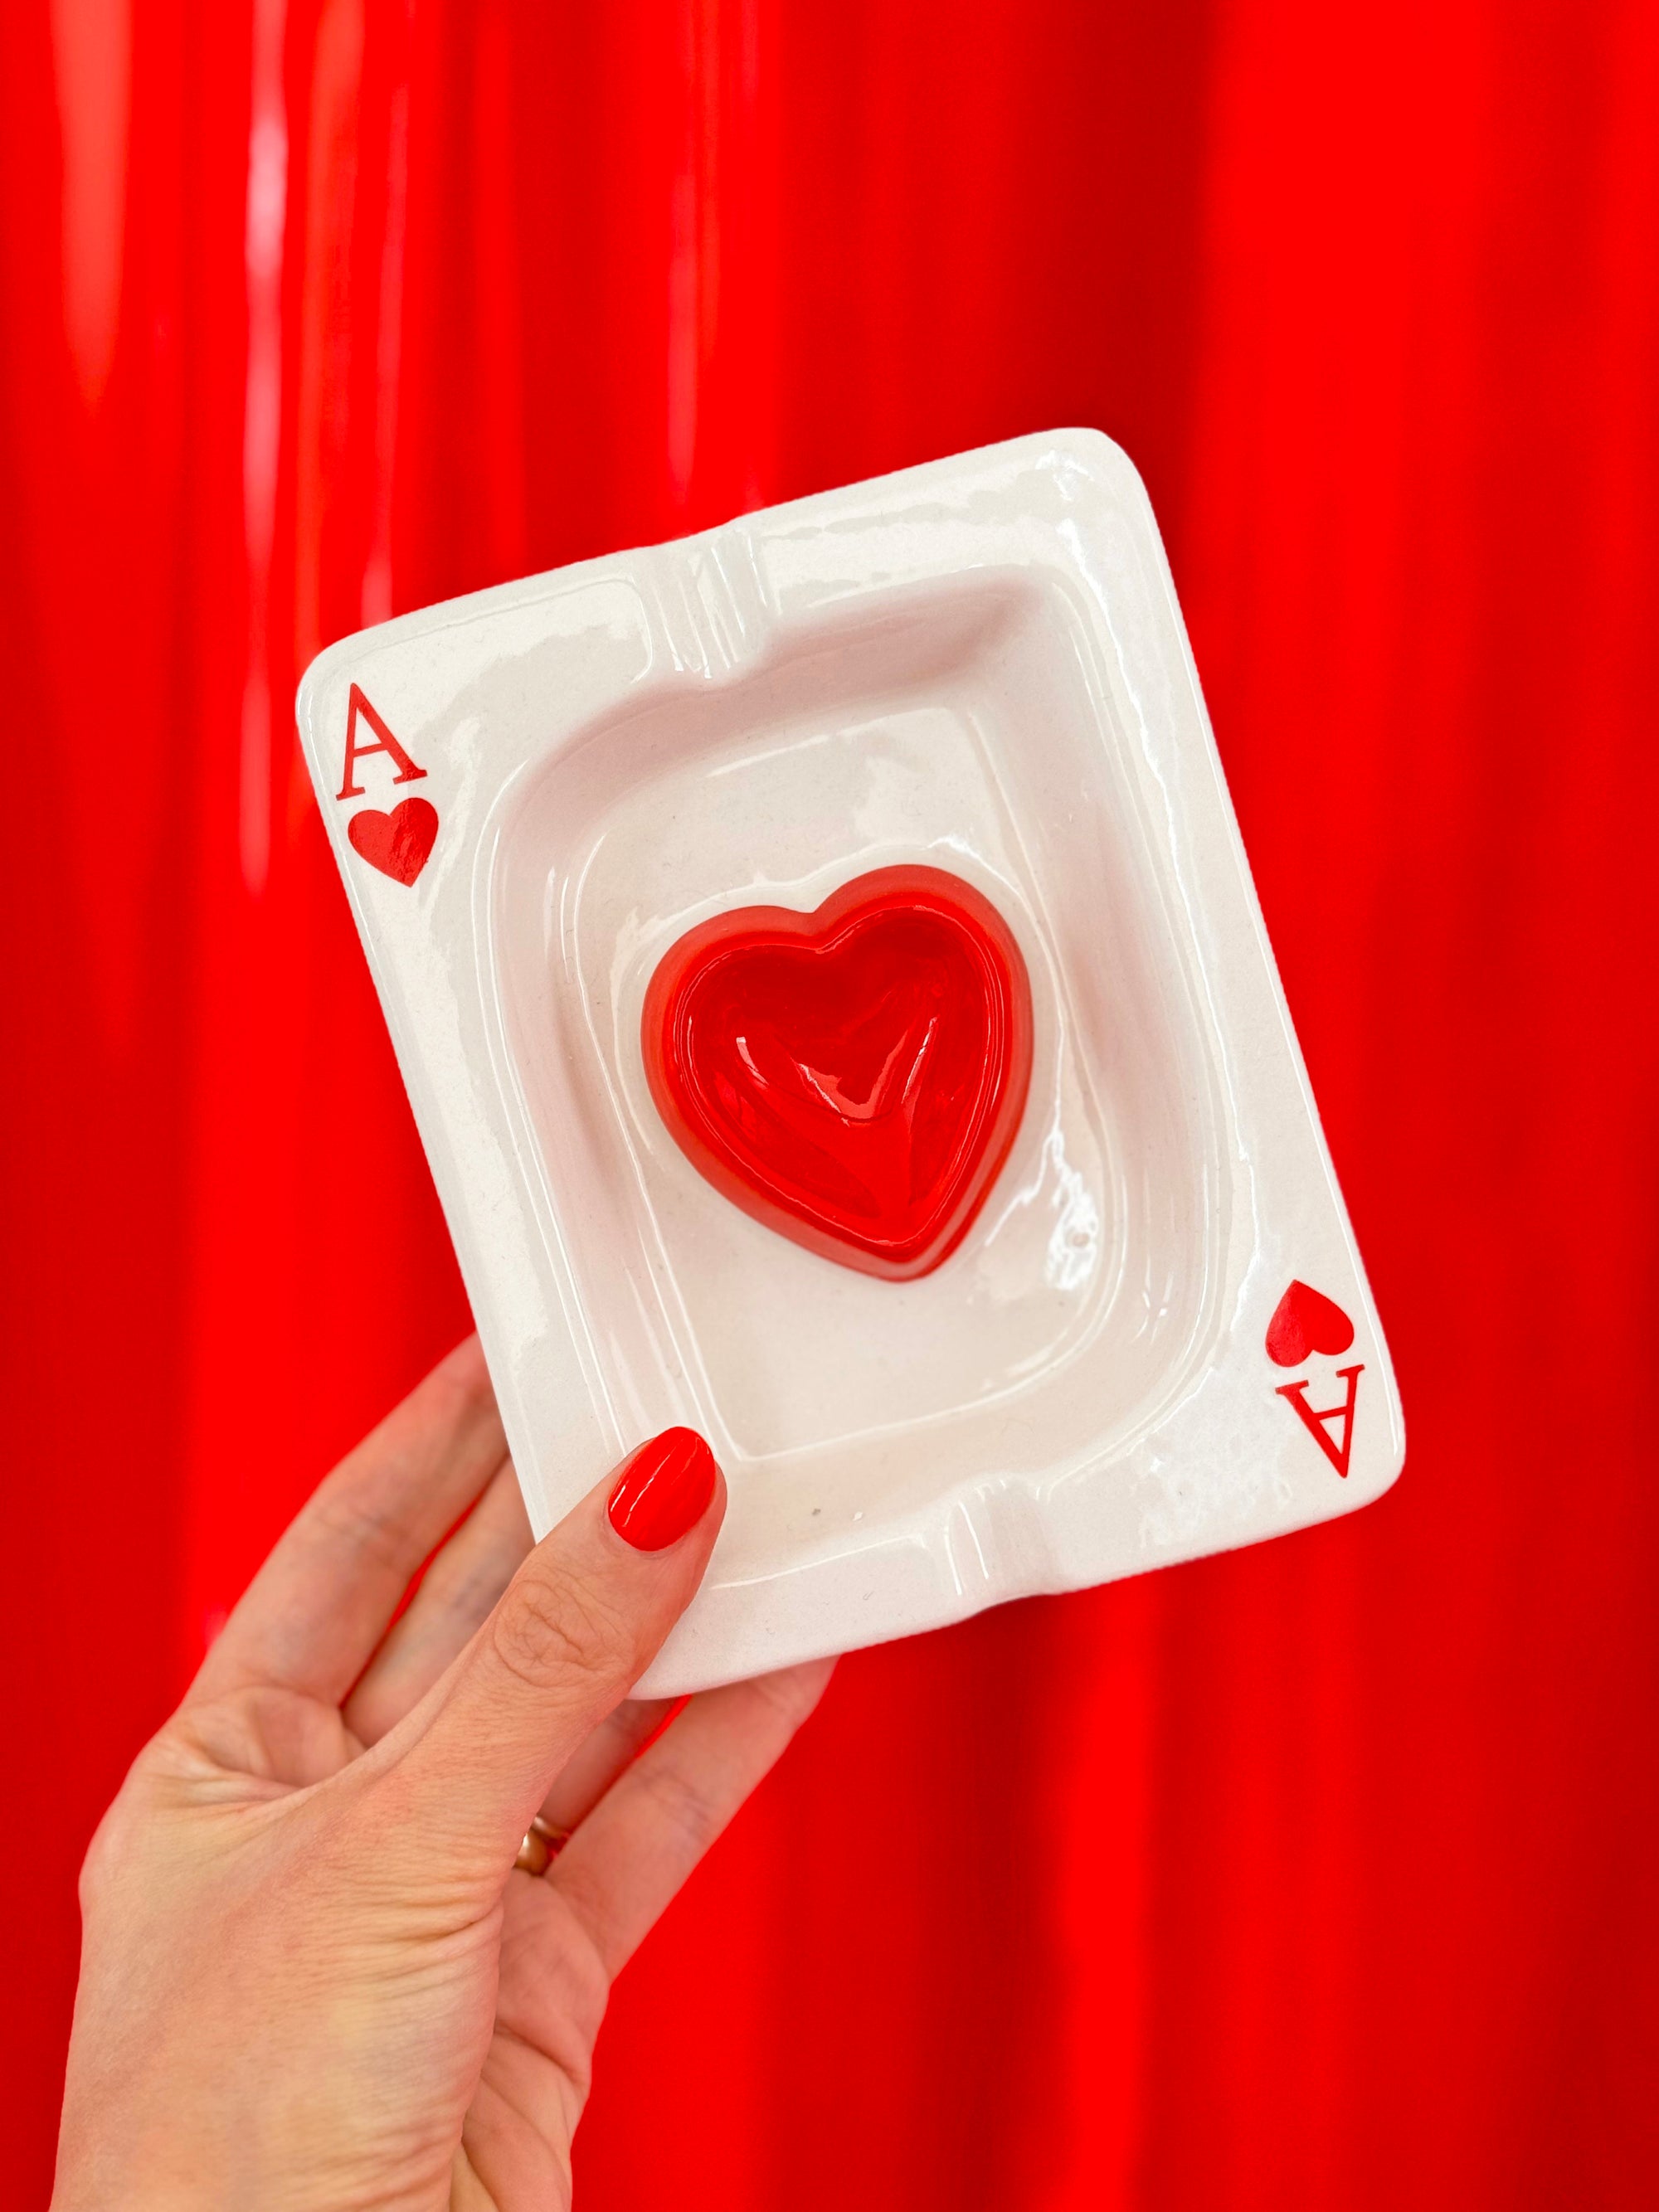 Ace of Hearts ash tray